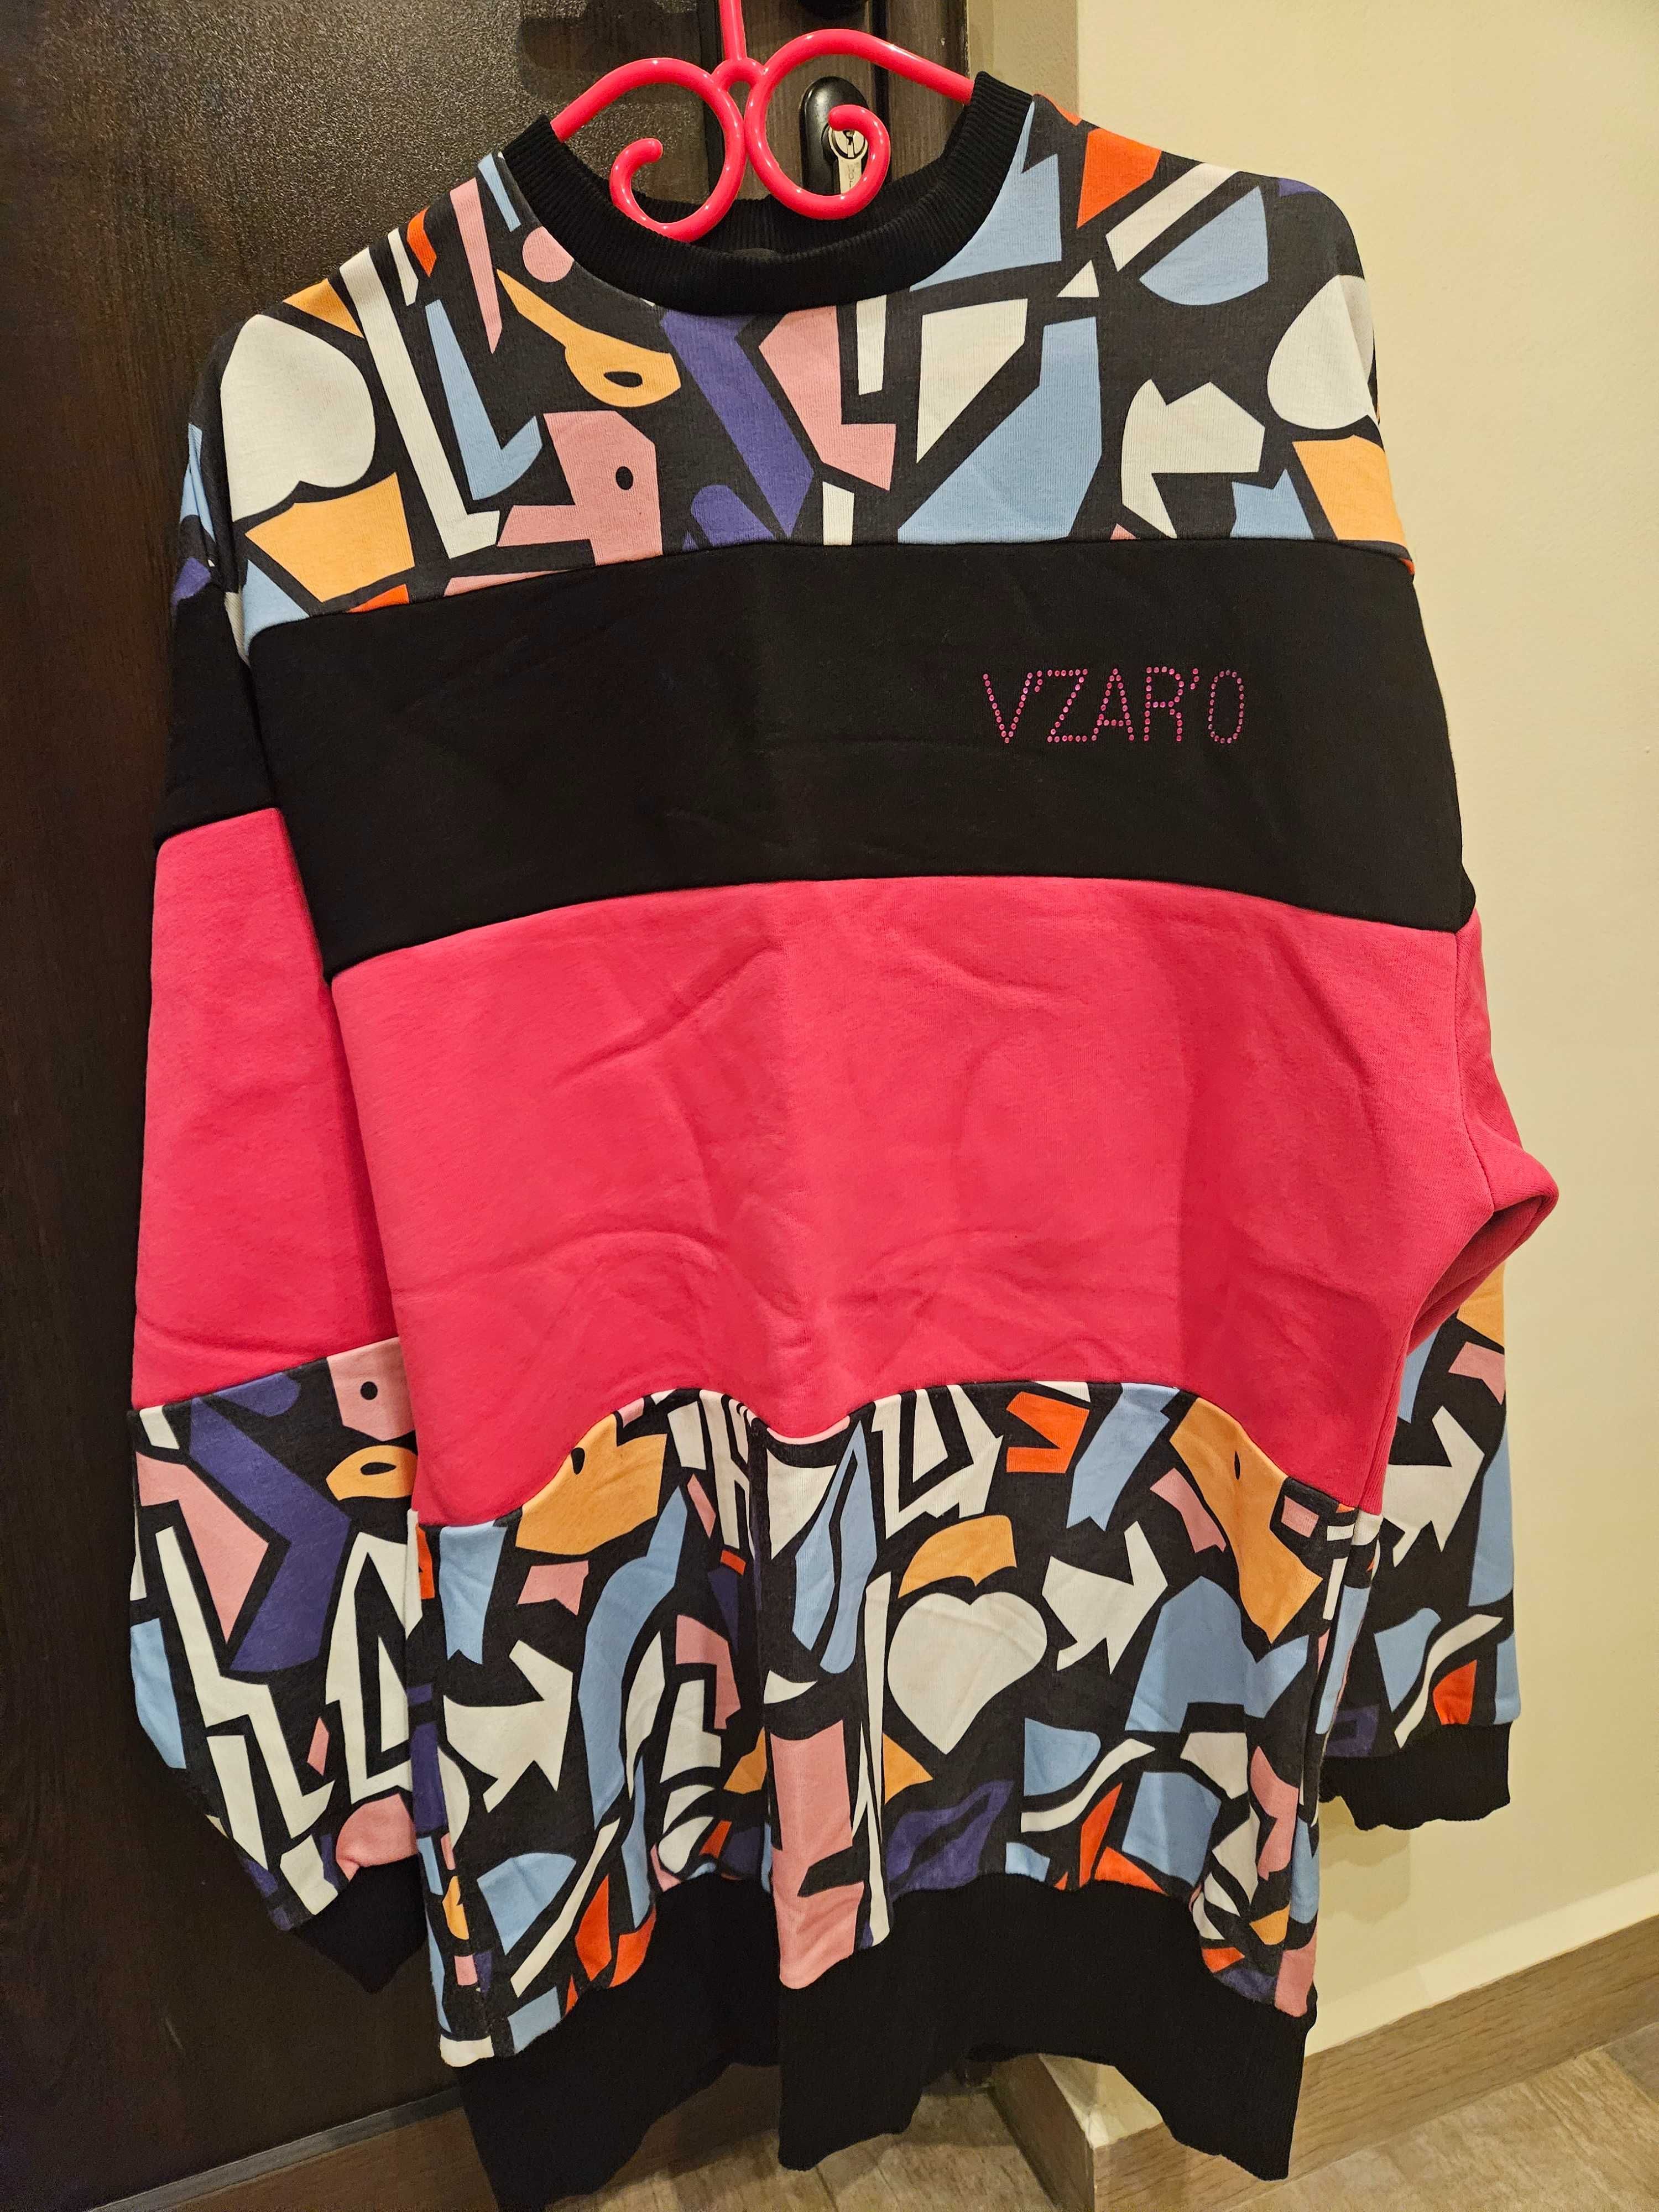 Много красив и удобен блузон на Vzaro